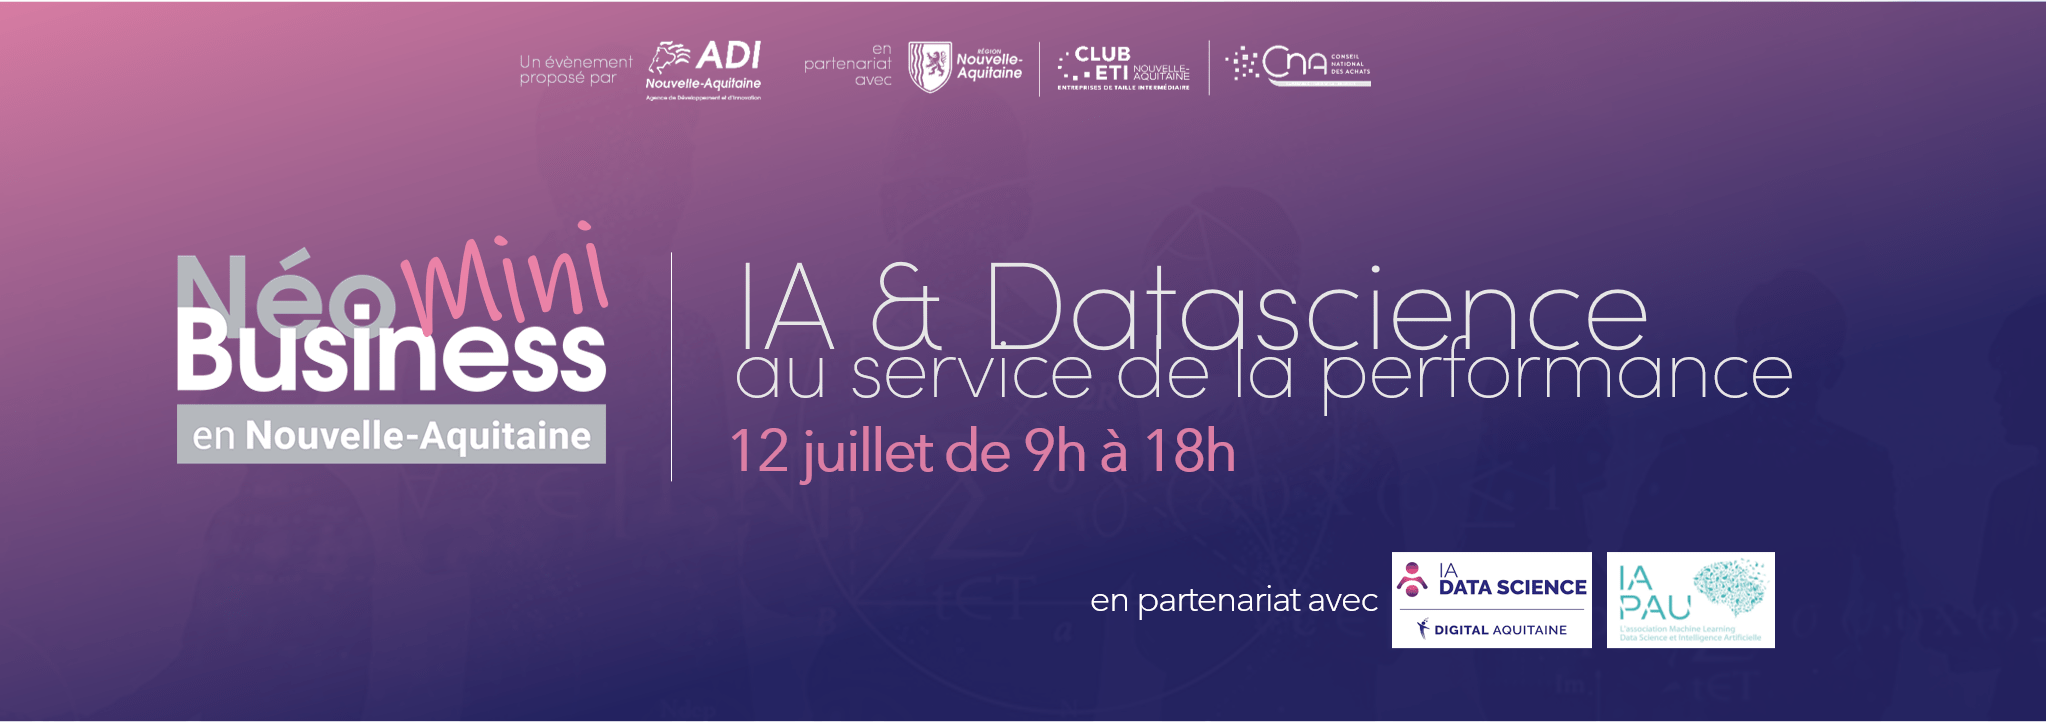 Mini-NéoBusiness en Nouvelle-Aquitaine : IA et Datascience au service de la performance